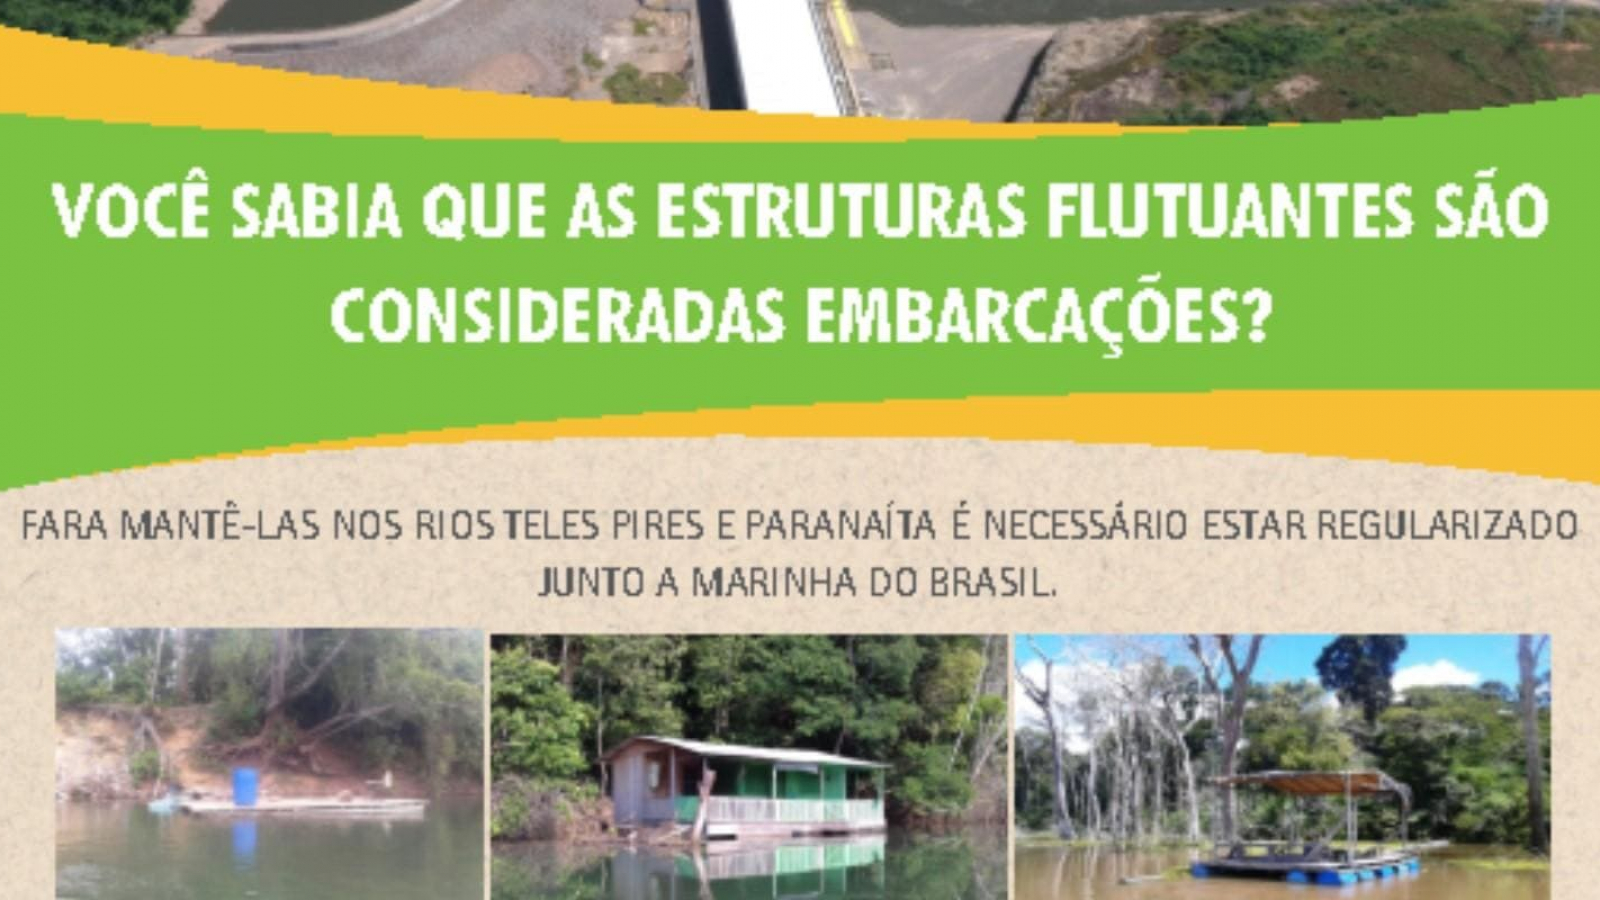 UHE Teles Pires alerta sobre instalação de flutuantes nos rios Teles Pires e Paranaíta